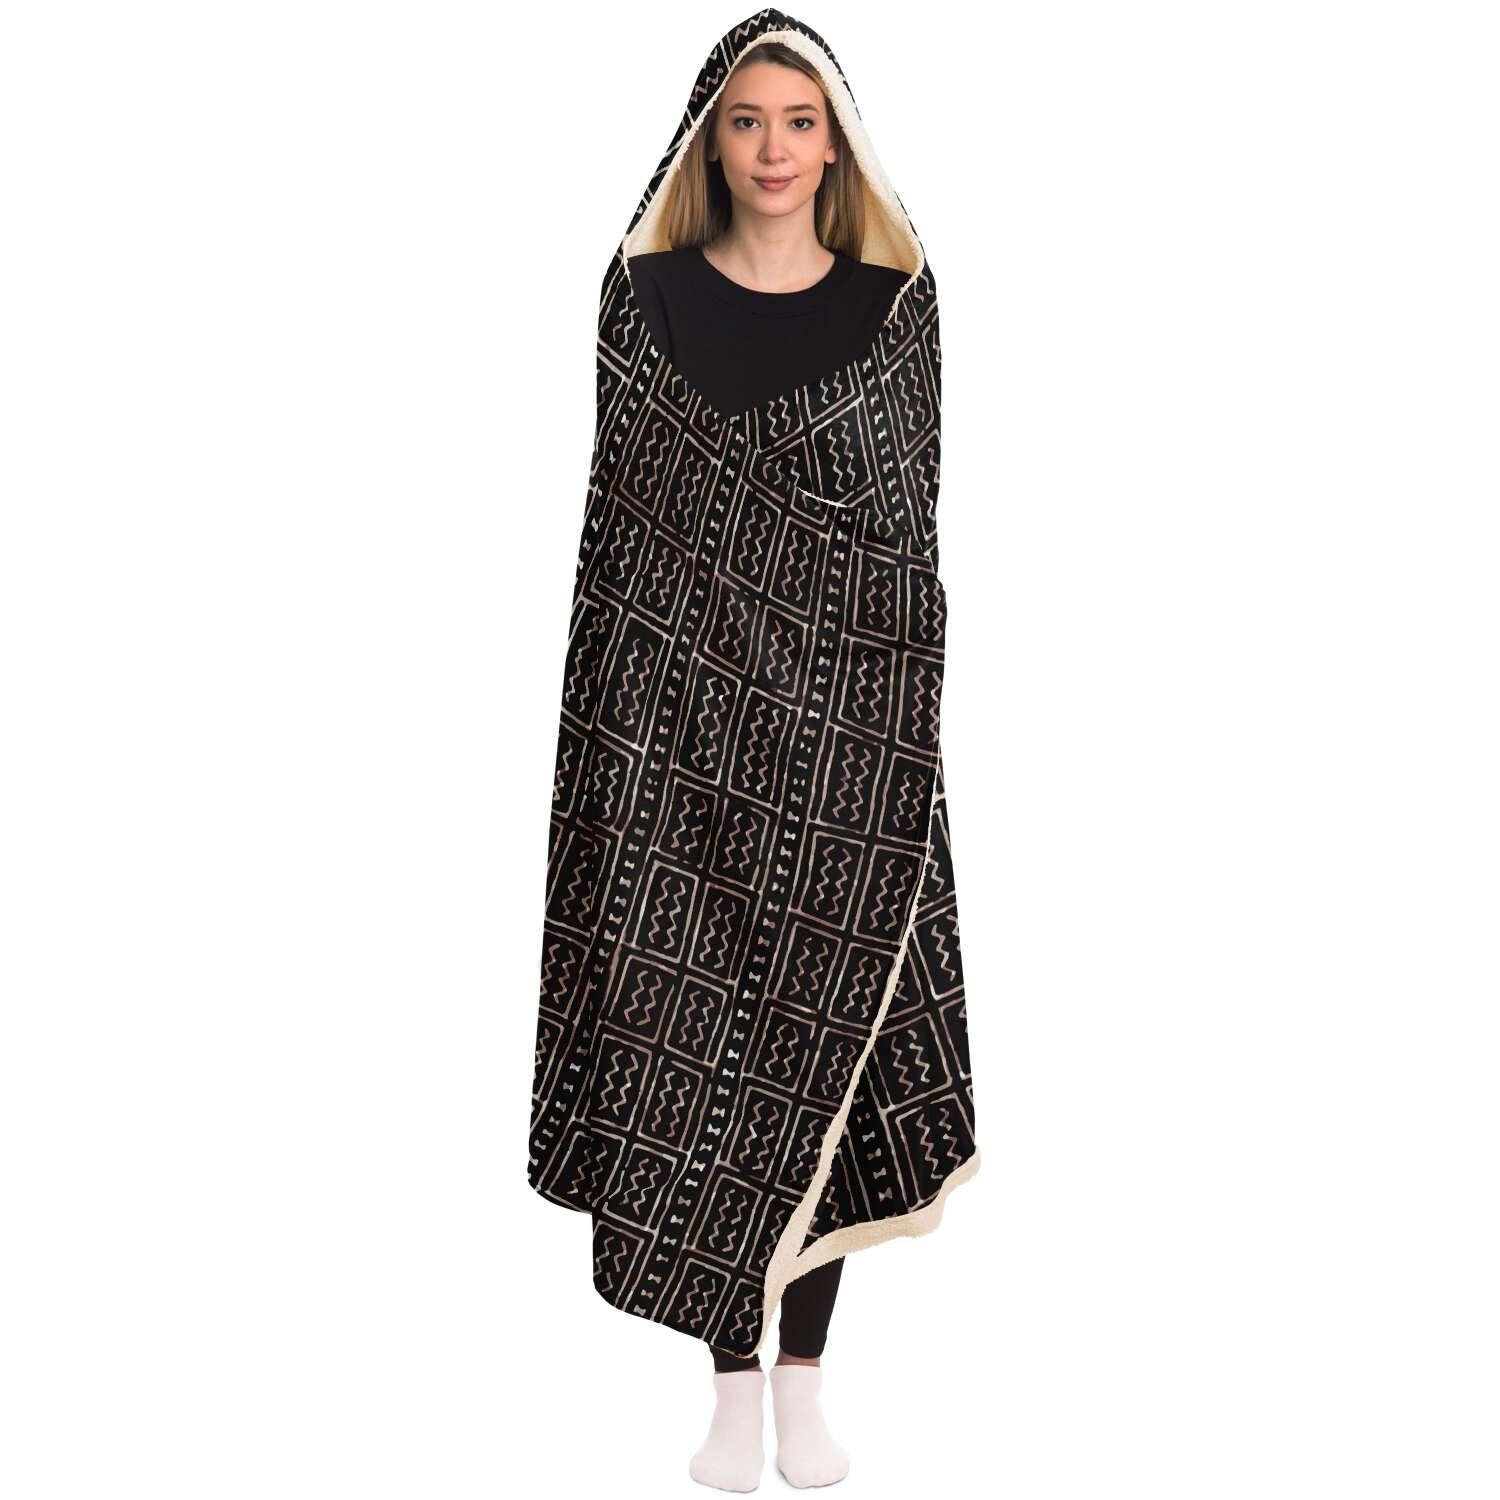 Hooded Blanket - AOP Hooded Blanket Bogolan Mali Traditional African Design